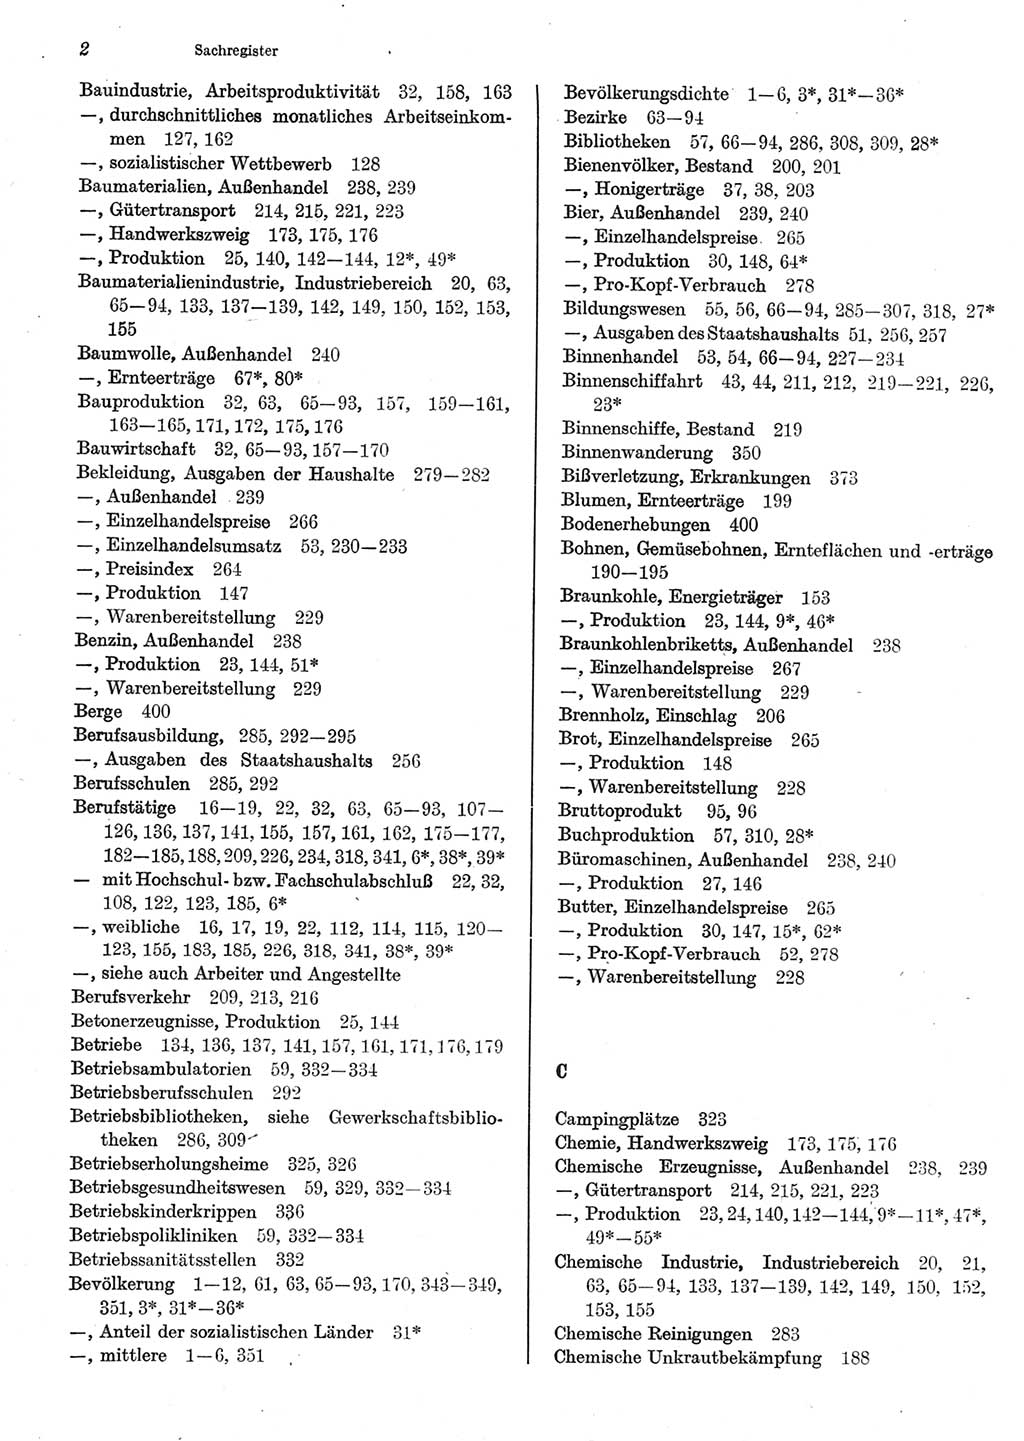 Statistisches Jahrbuch der Deutschen Demokratischen Republik (DDR) 1983, Seite 2 (Stat. Jb. DDR 1983, S. 2)